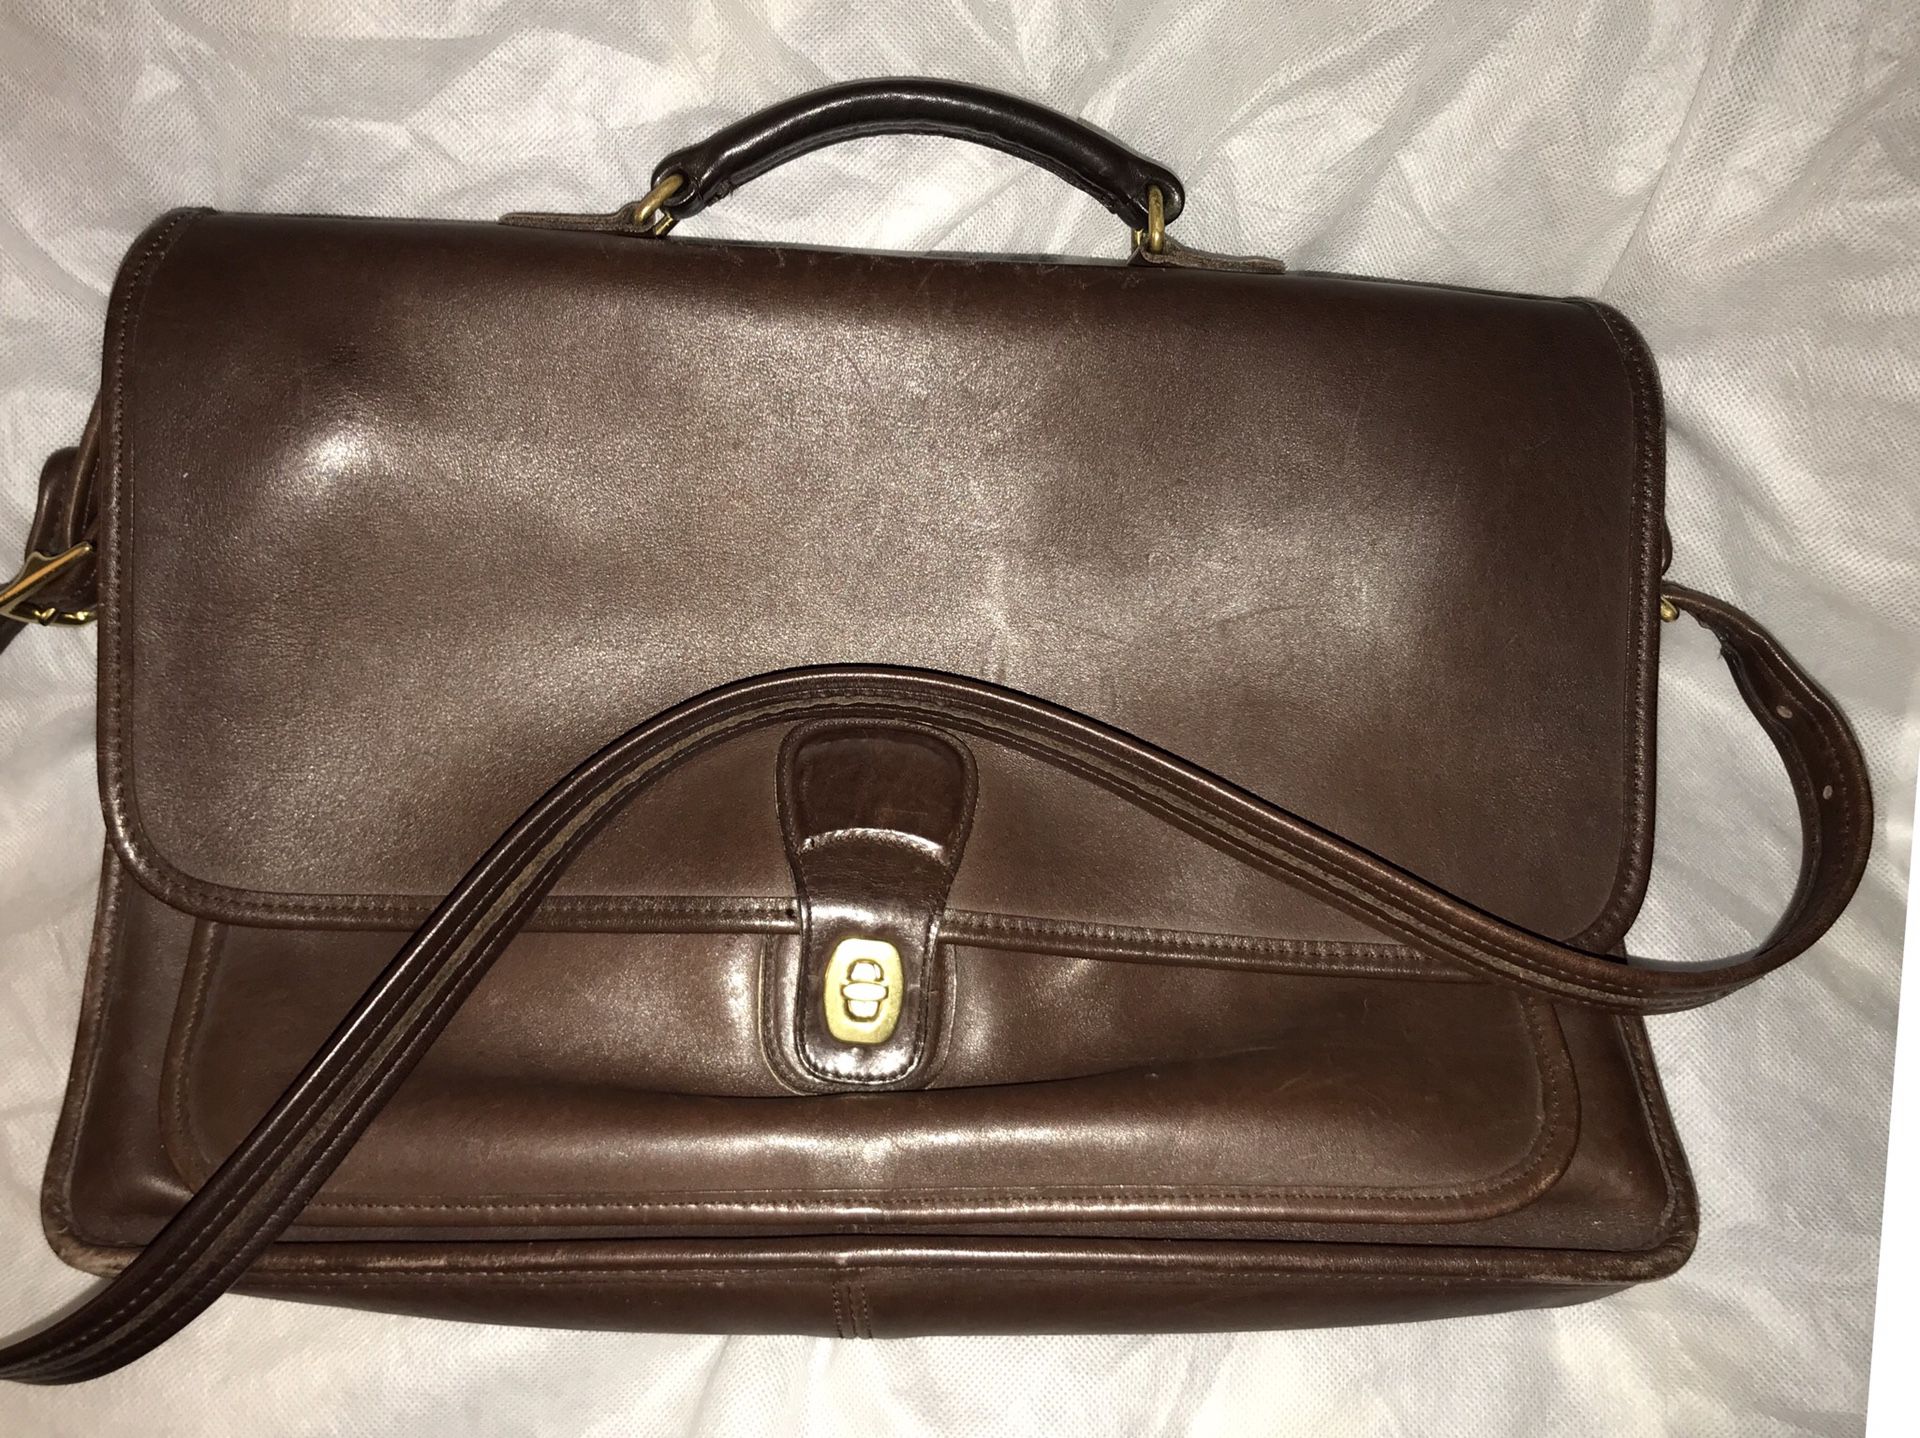 Vintage Coach leather messenger bag